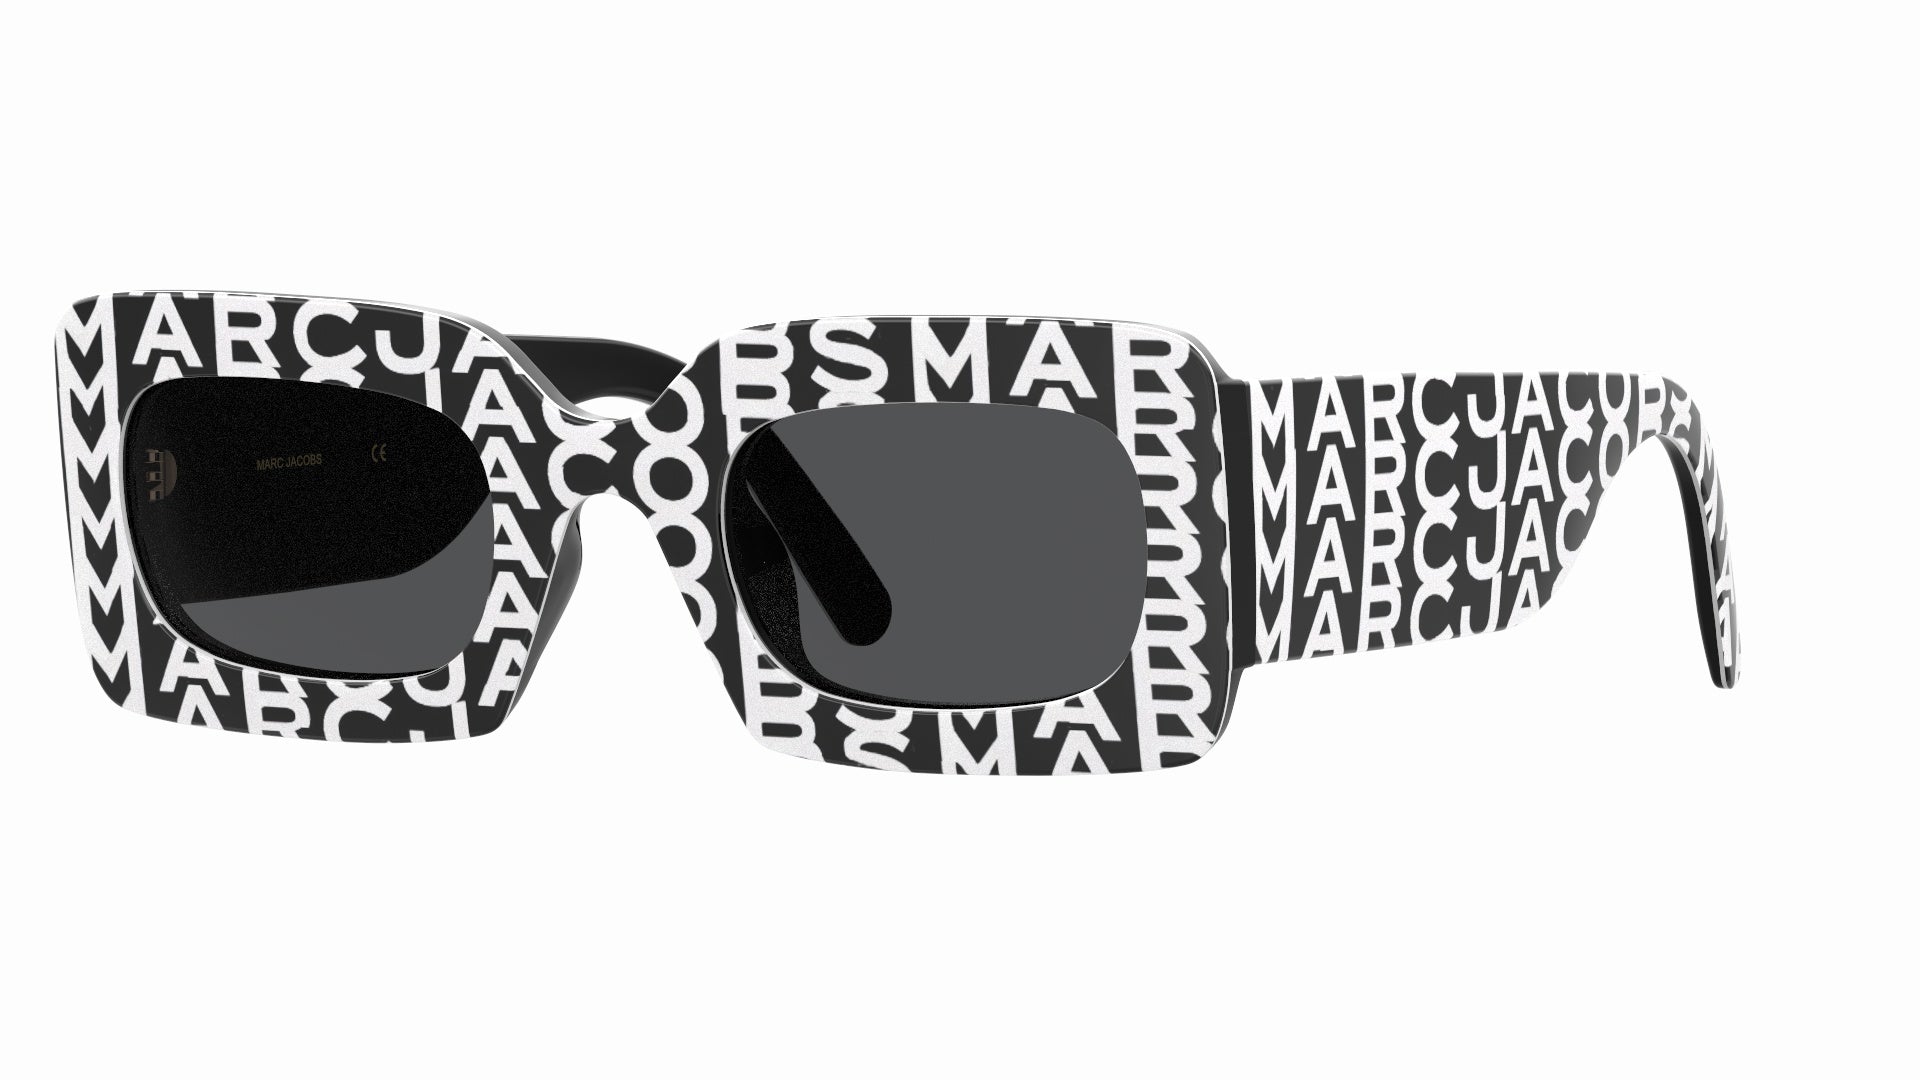 Marc Jacobs Women's Marc 488/S Sunglasses